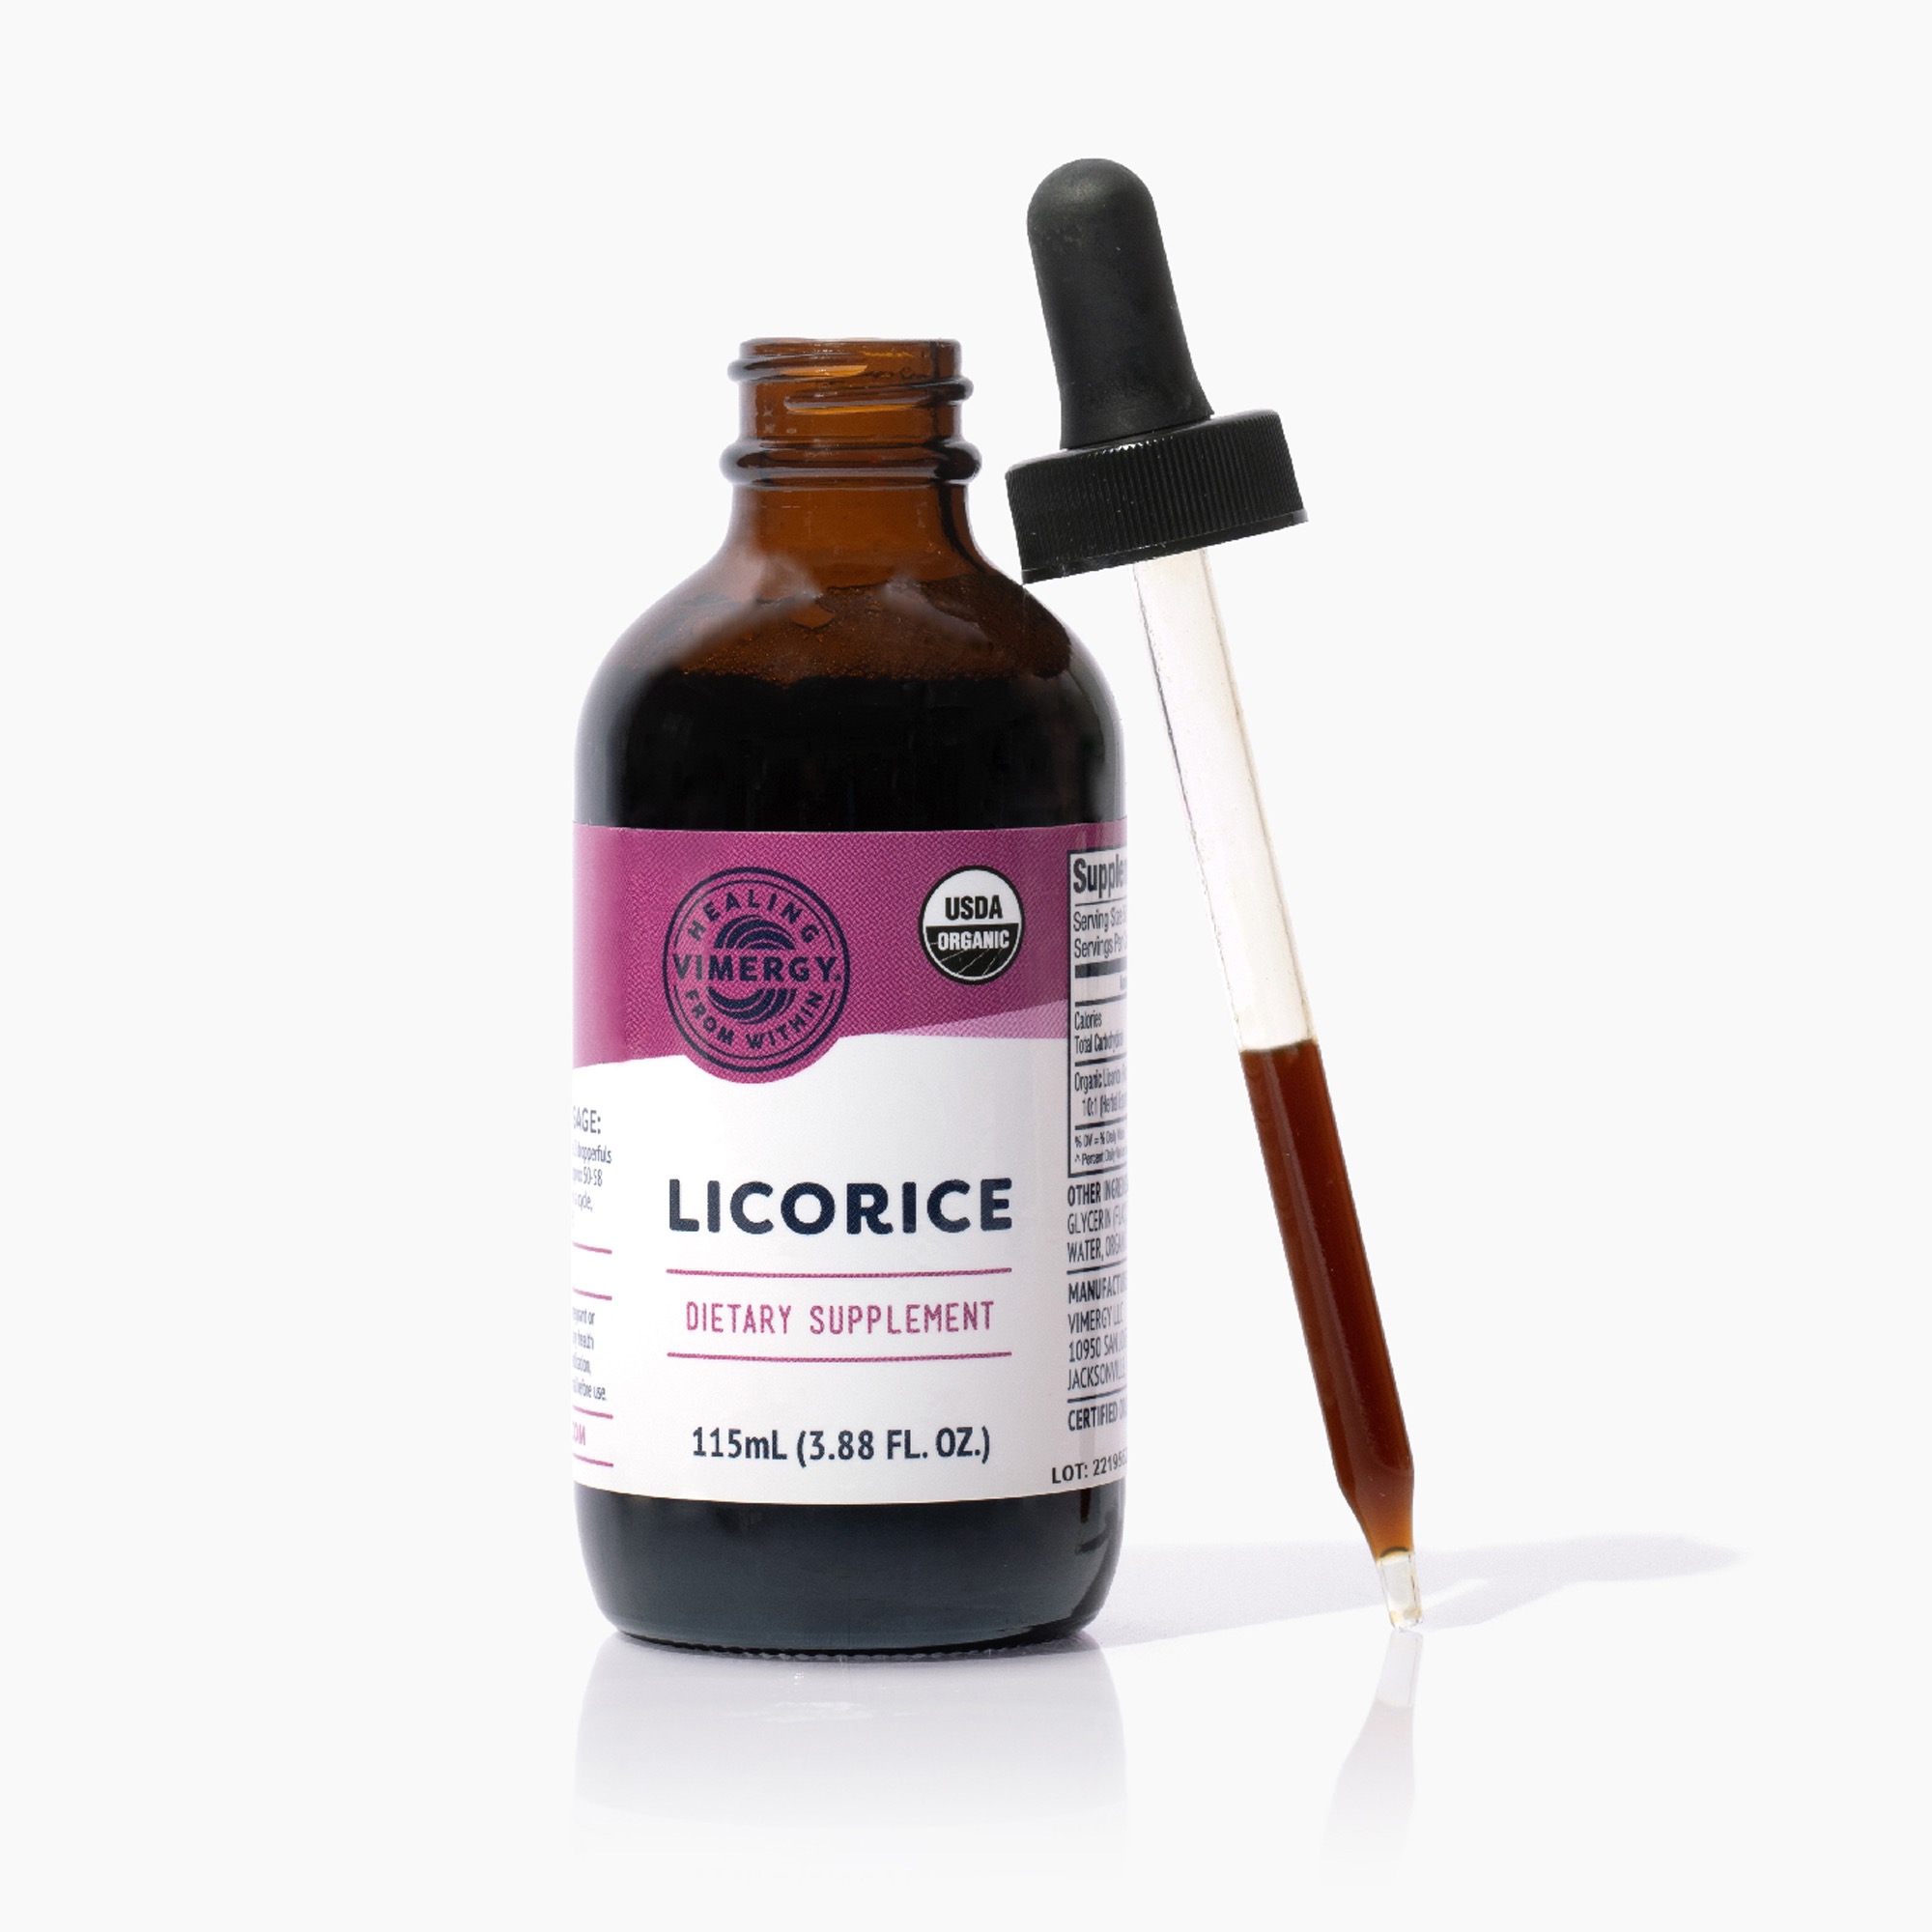 Süßholzwurzelextrakt 10:1 (Organic Licorice), flüssig | Vimergy von Vimergy.